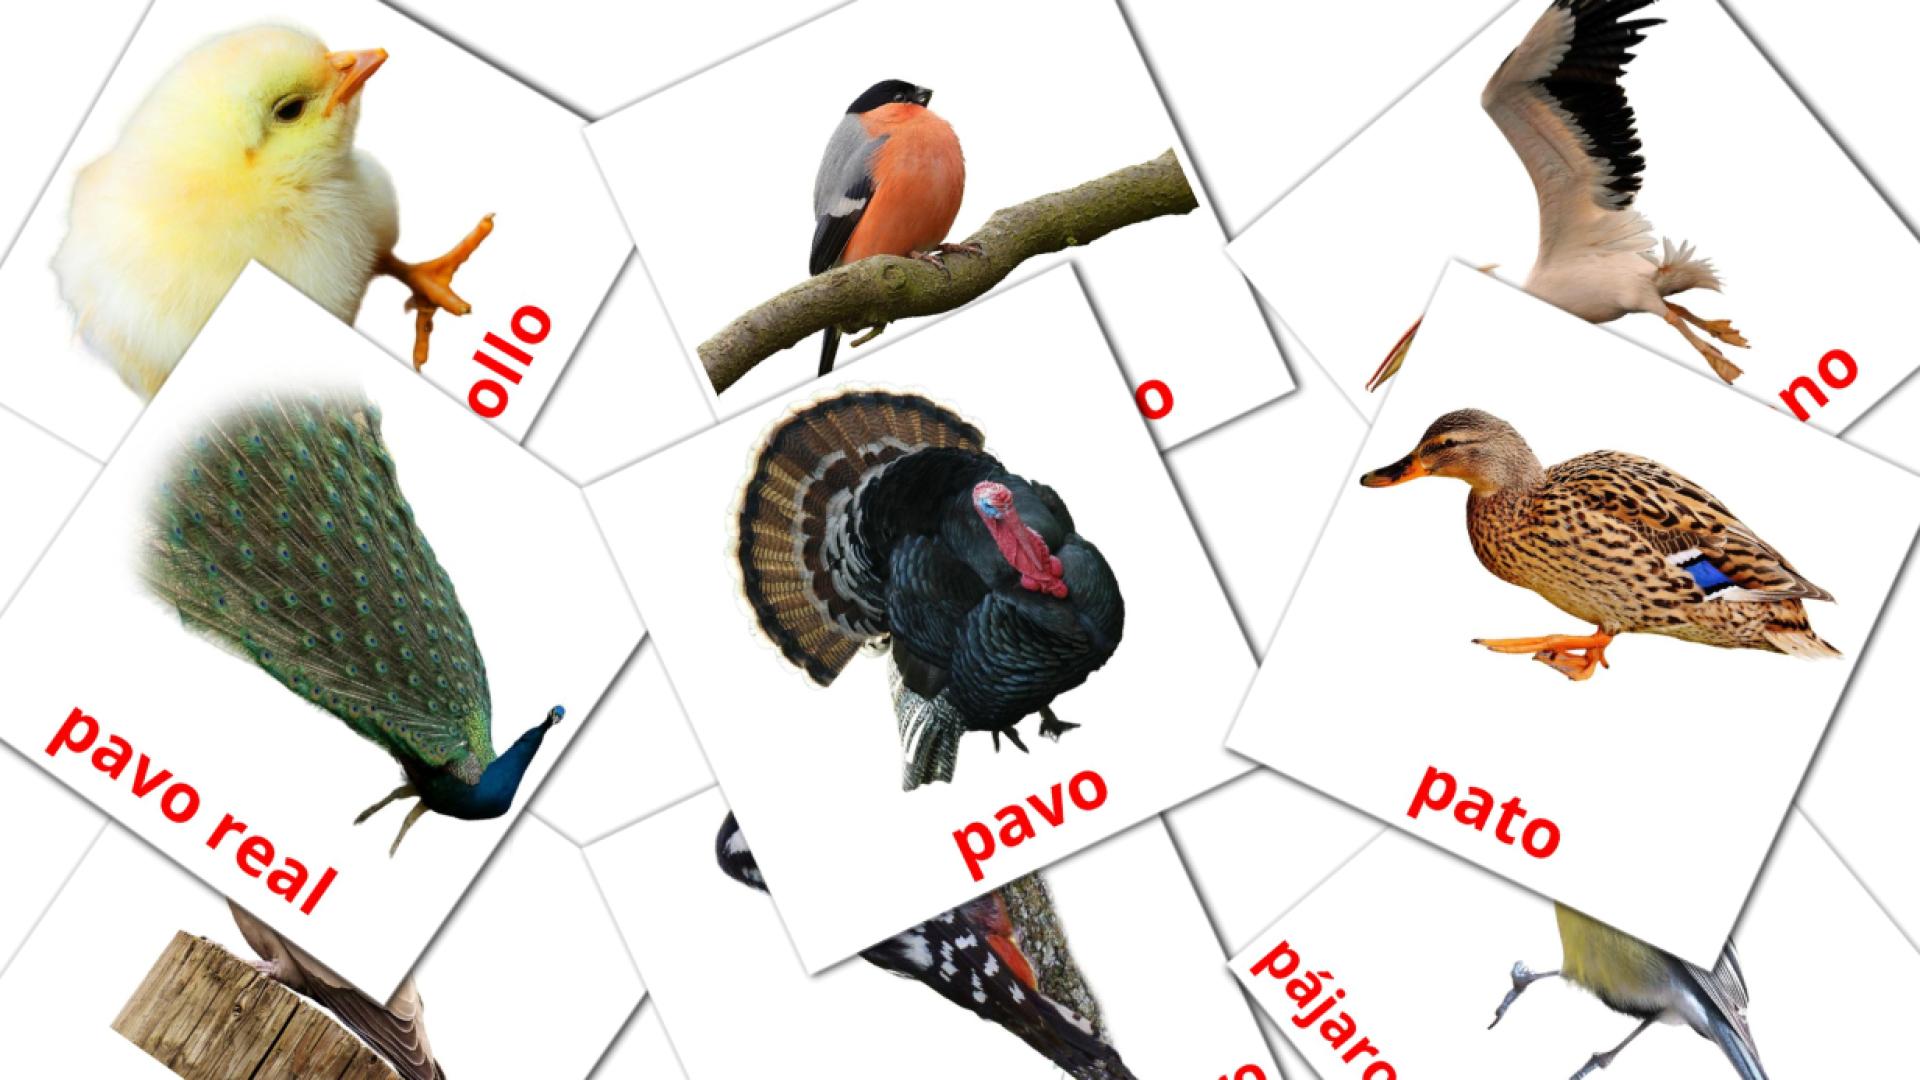 tigrigna(Eritrea) tarjetas de vocabulario en Aves